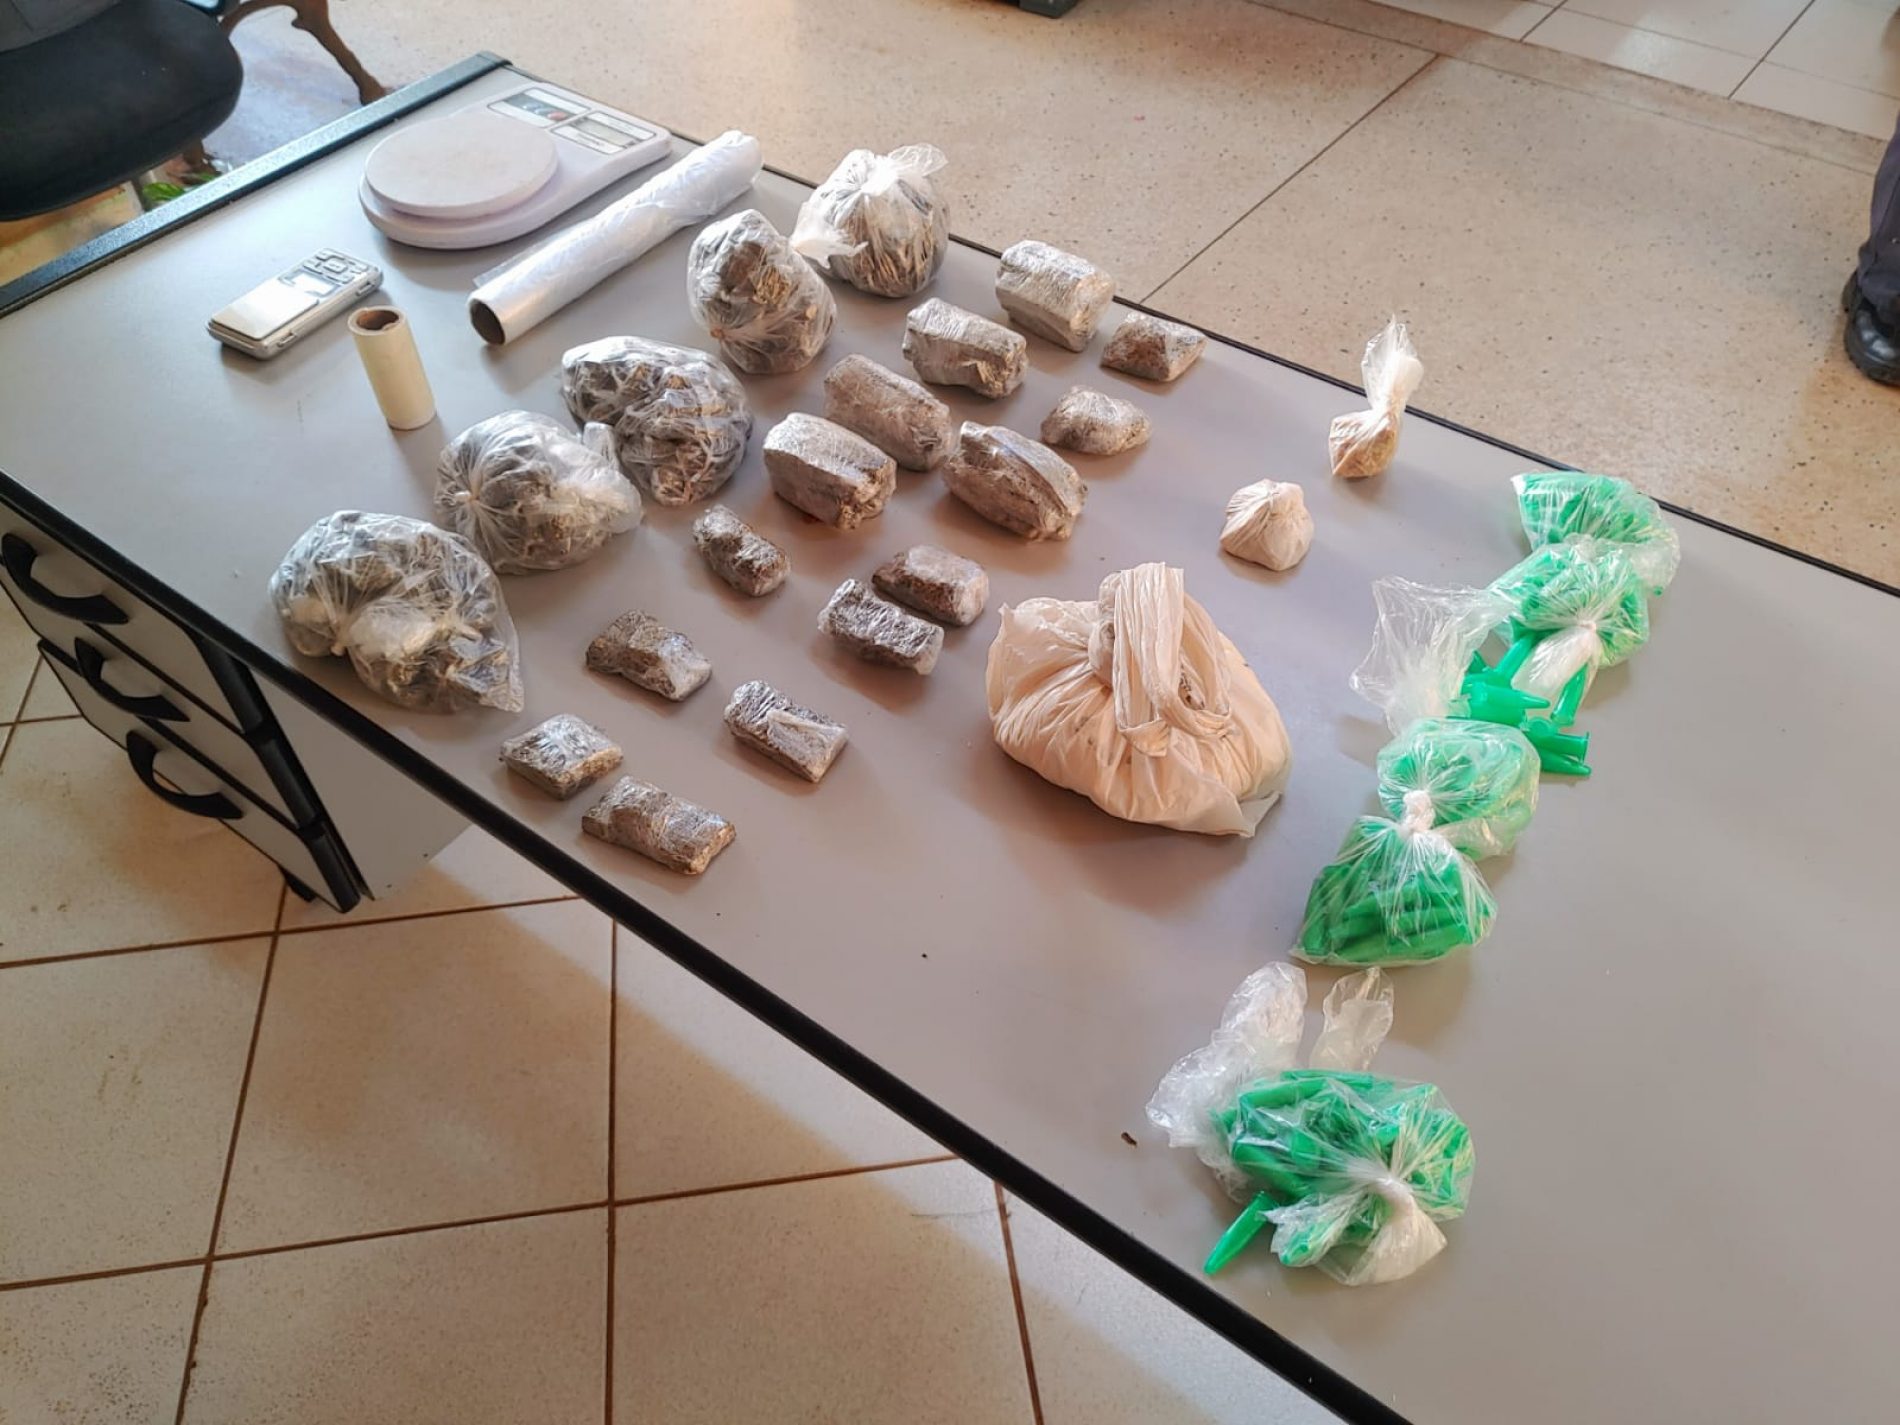 COLINA: Mais de dois quilos de drogas são encontrados em terreno baldio